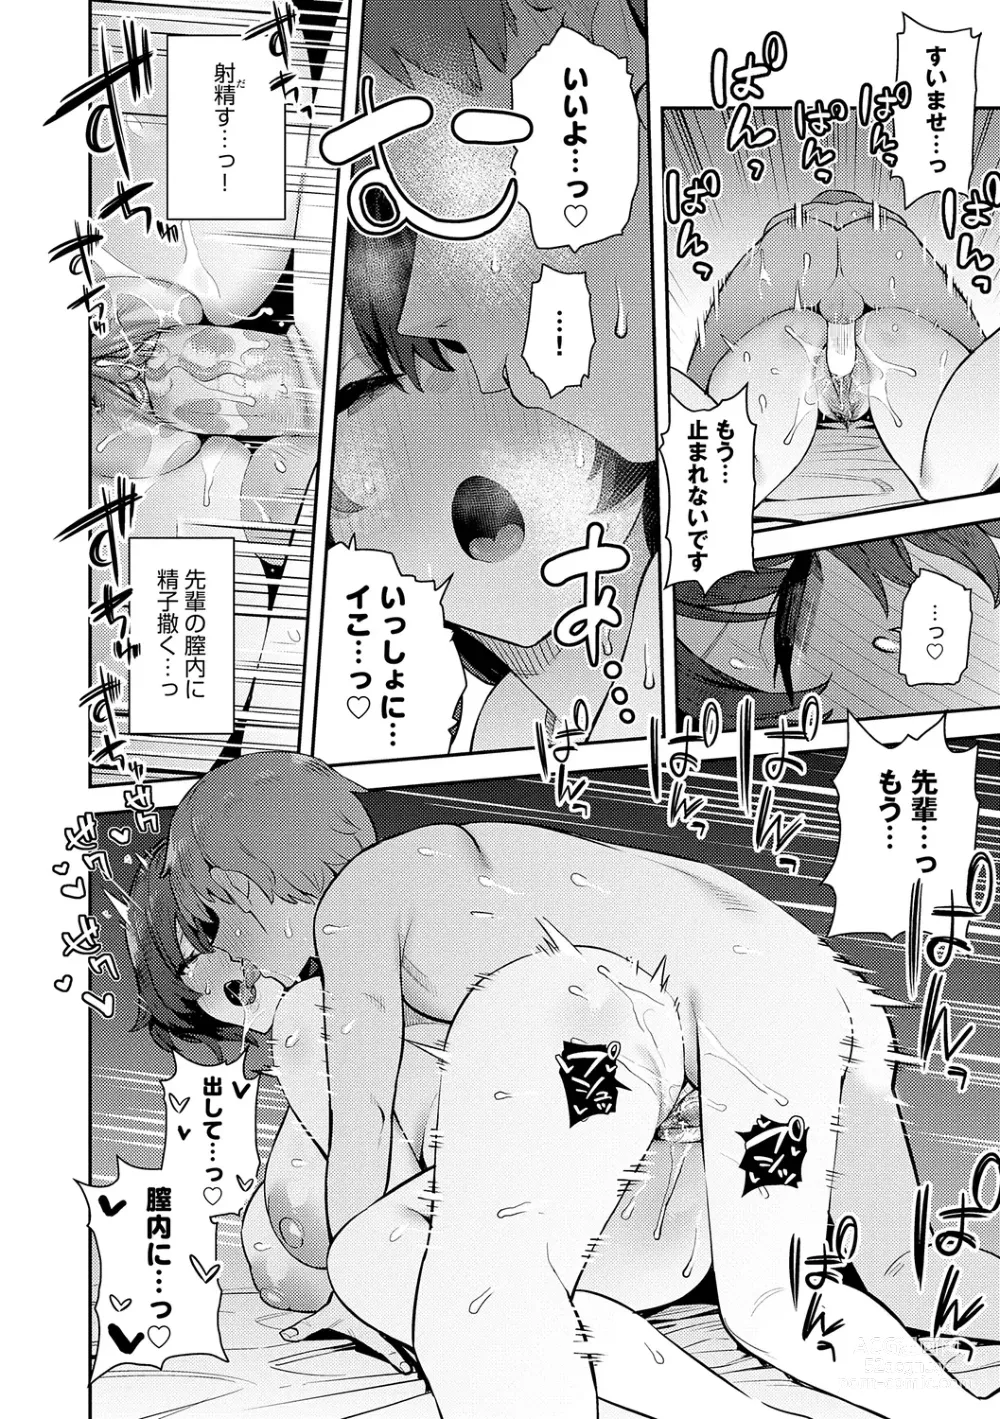 Page 246 of manga Seiyoku Tsuyo Tsuyo + Extra (decensored)